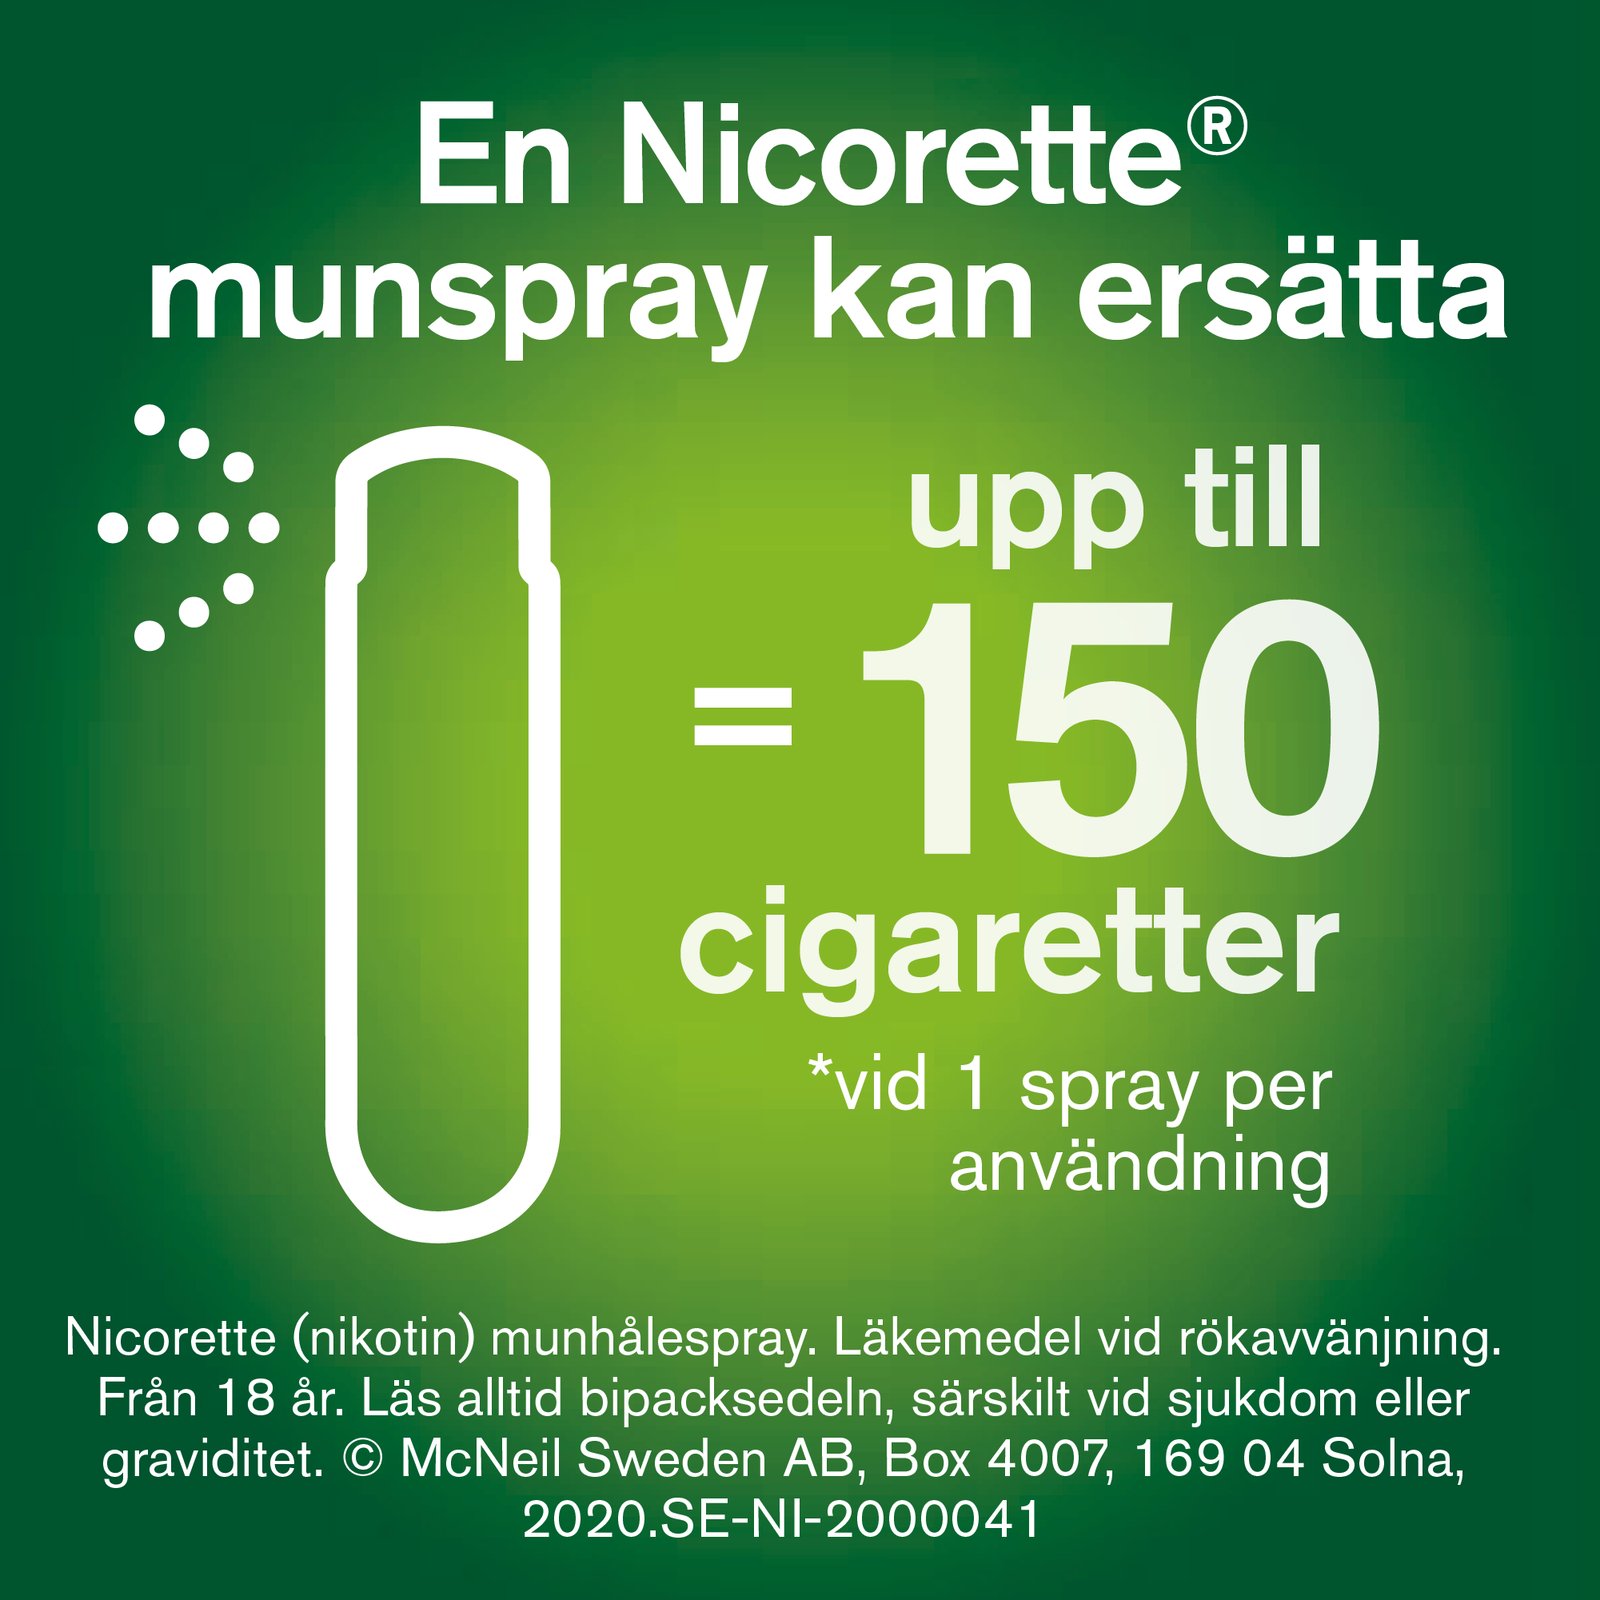 Nicorette Pepparmint Munhålespray 1 mg/spray 2 x 150 spraydoser